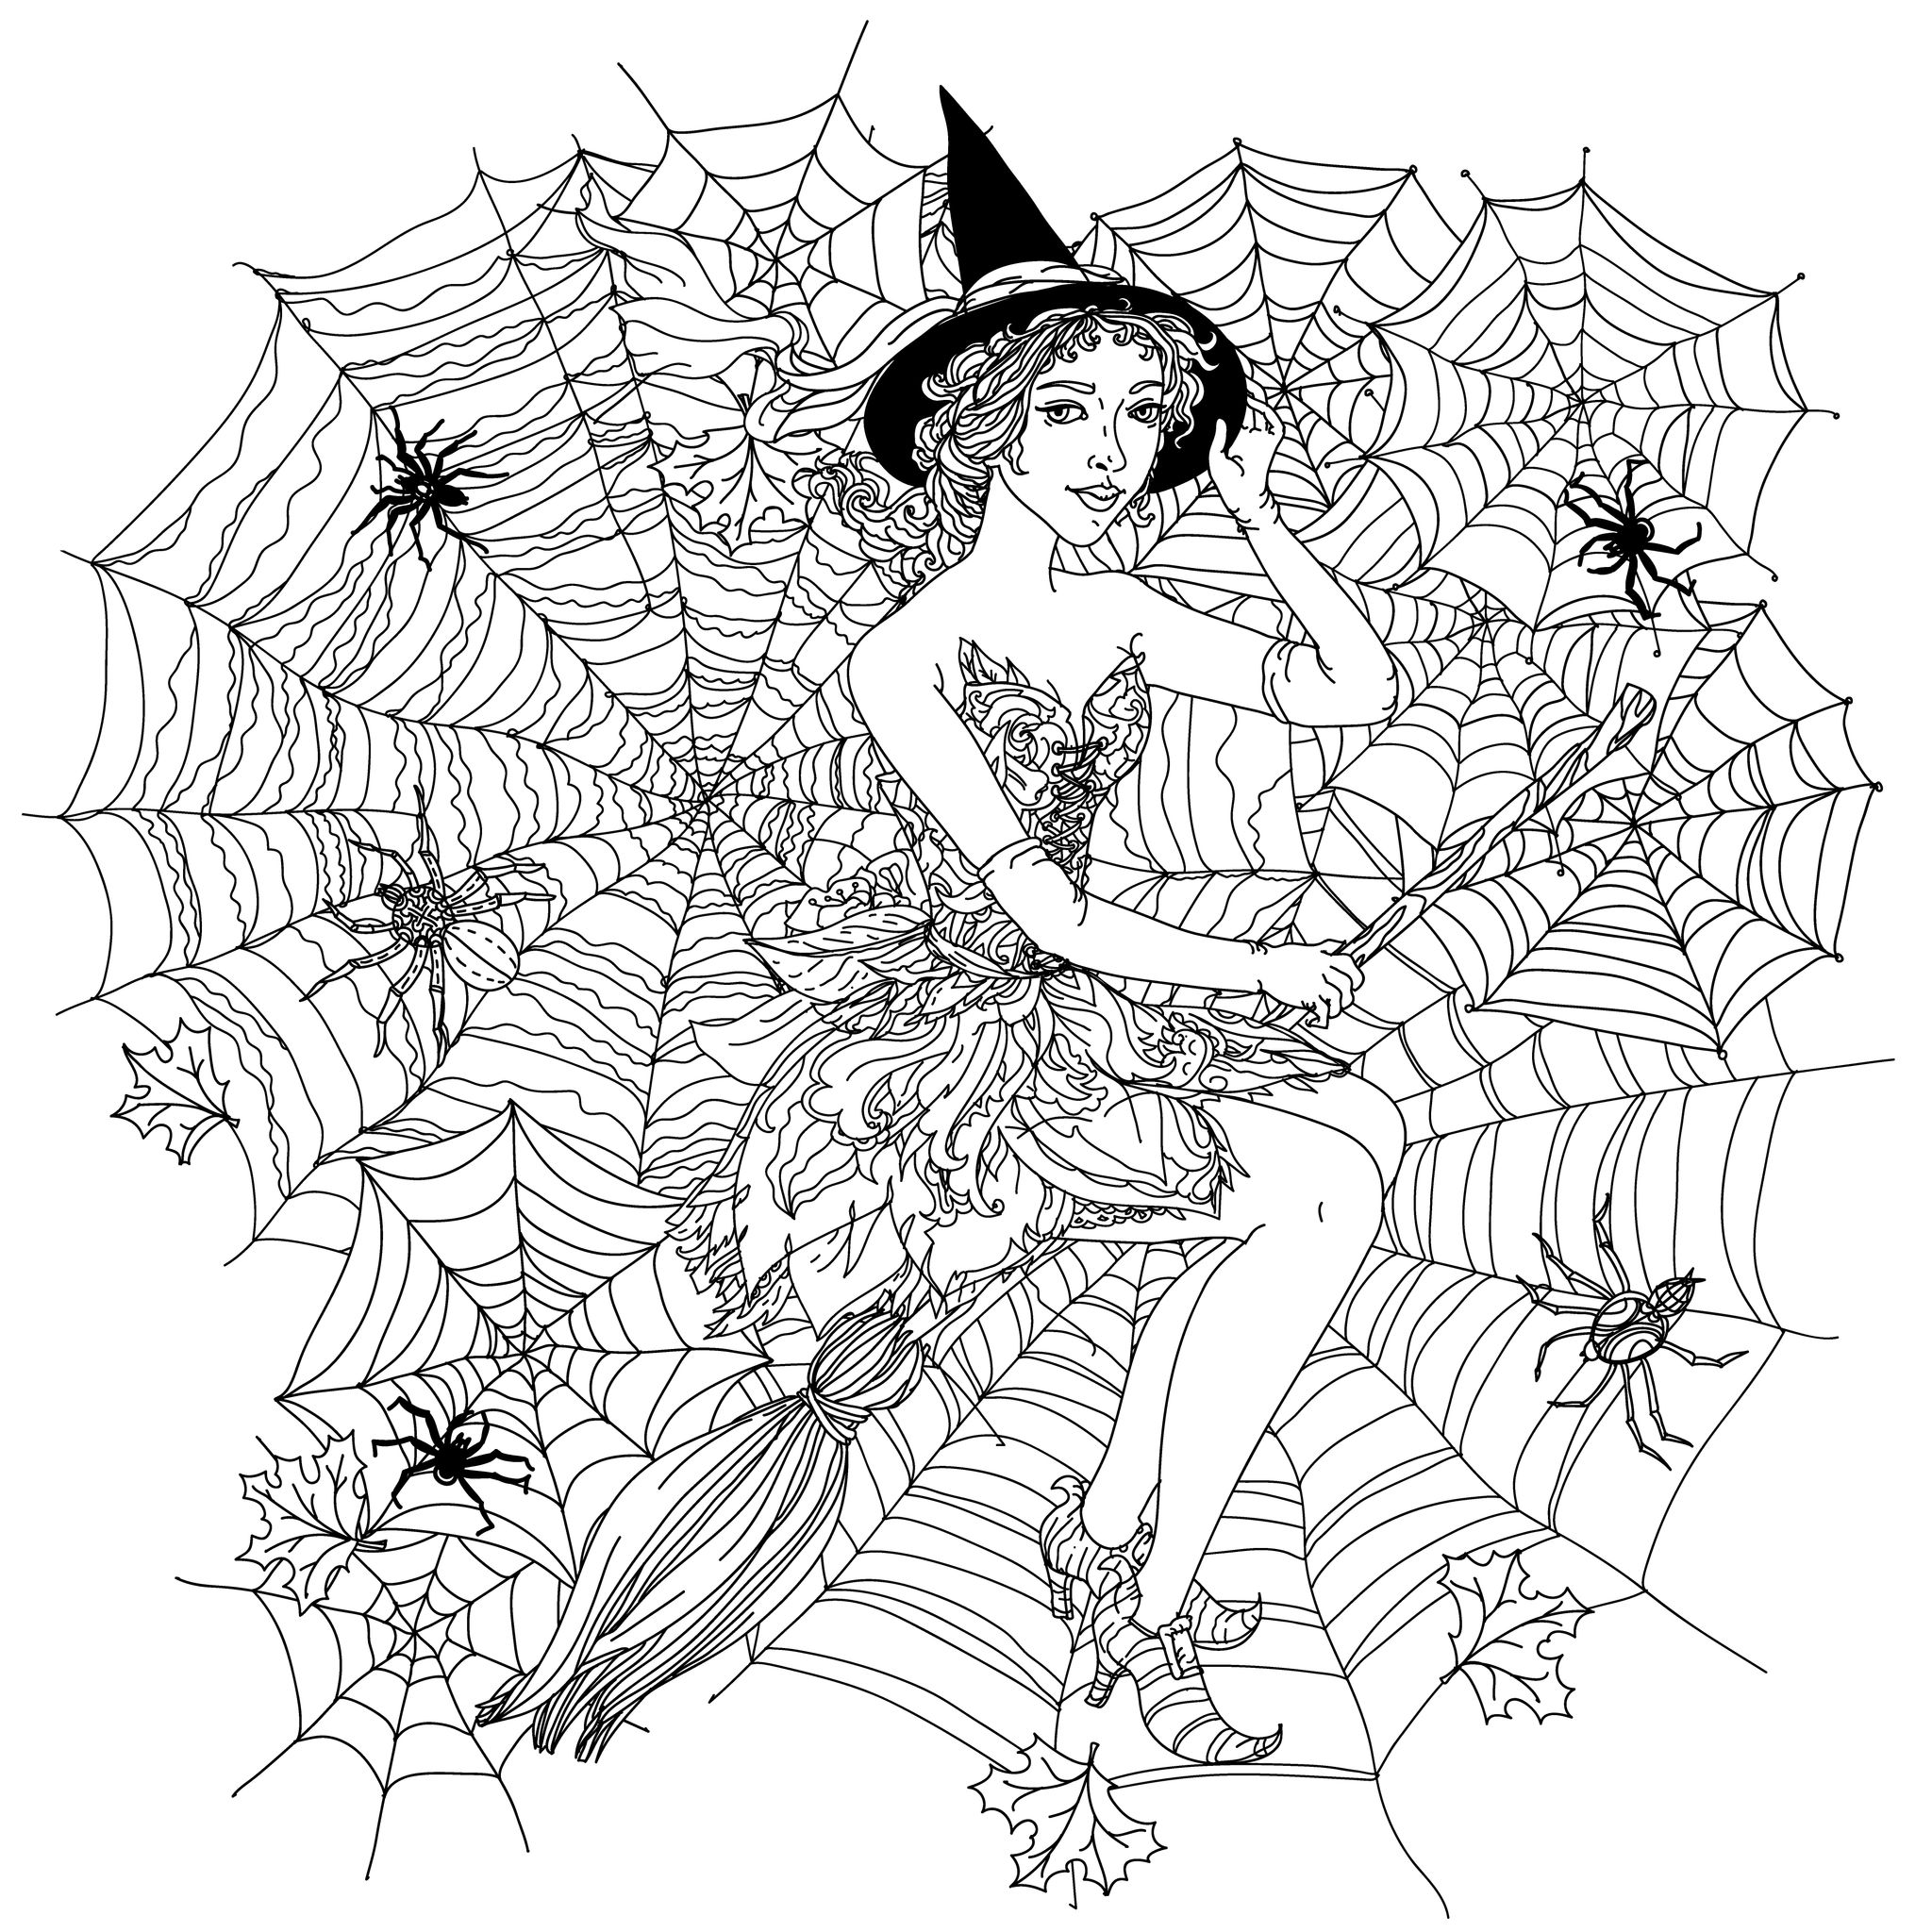 Disegni da colorare per adulti : Halloween - 8, Artista : Ipanki   Fonte : 123rf